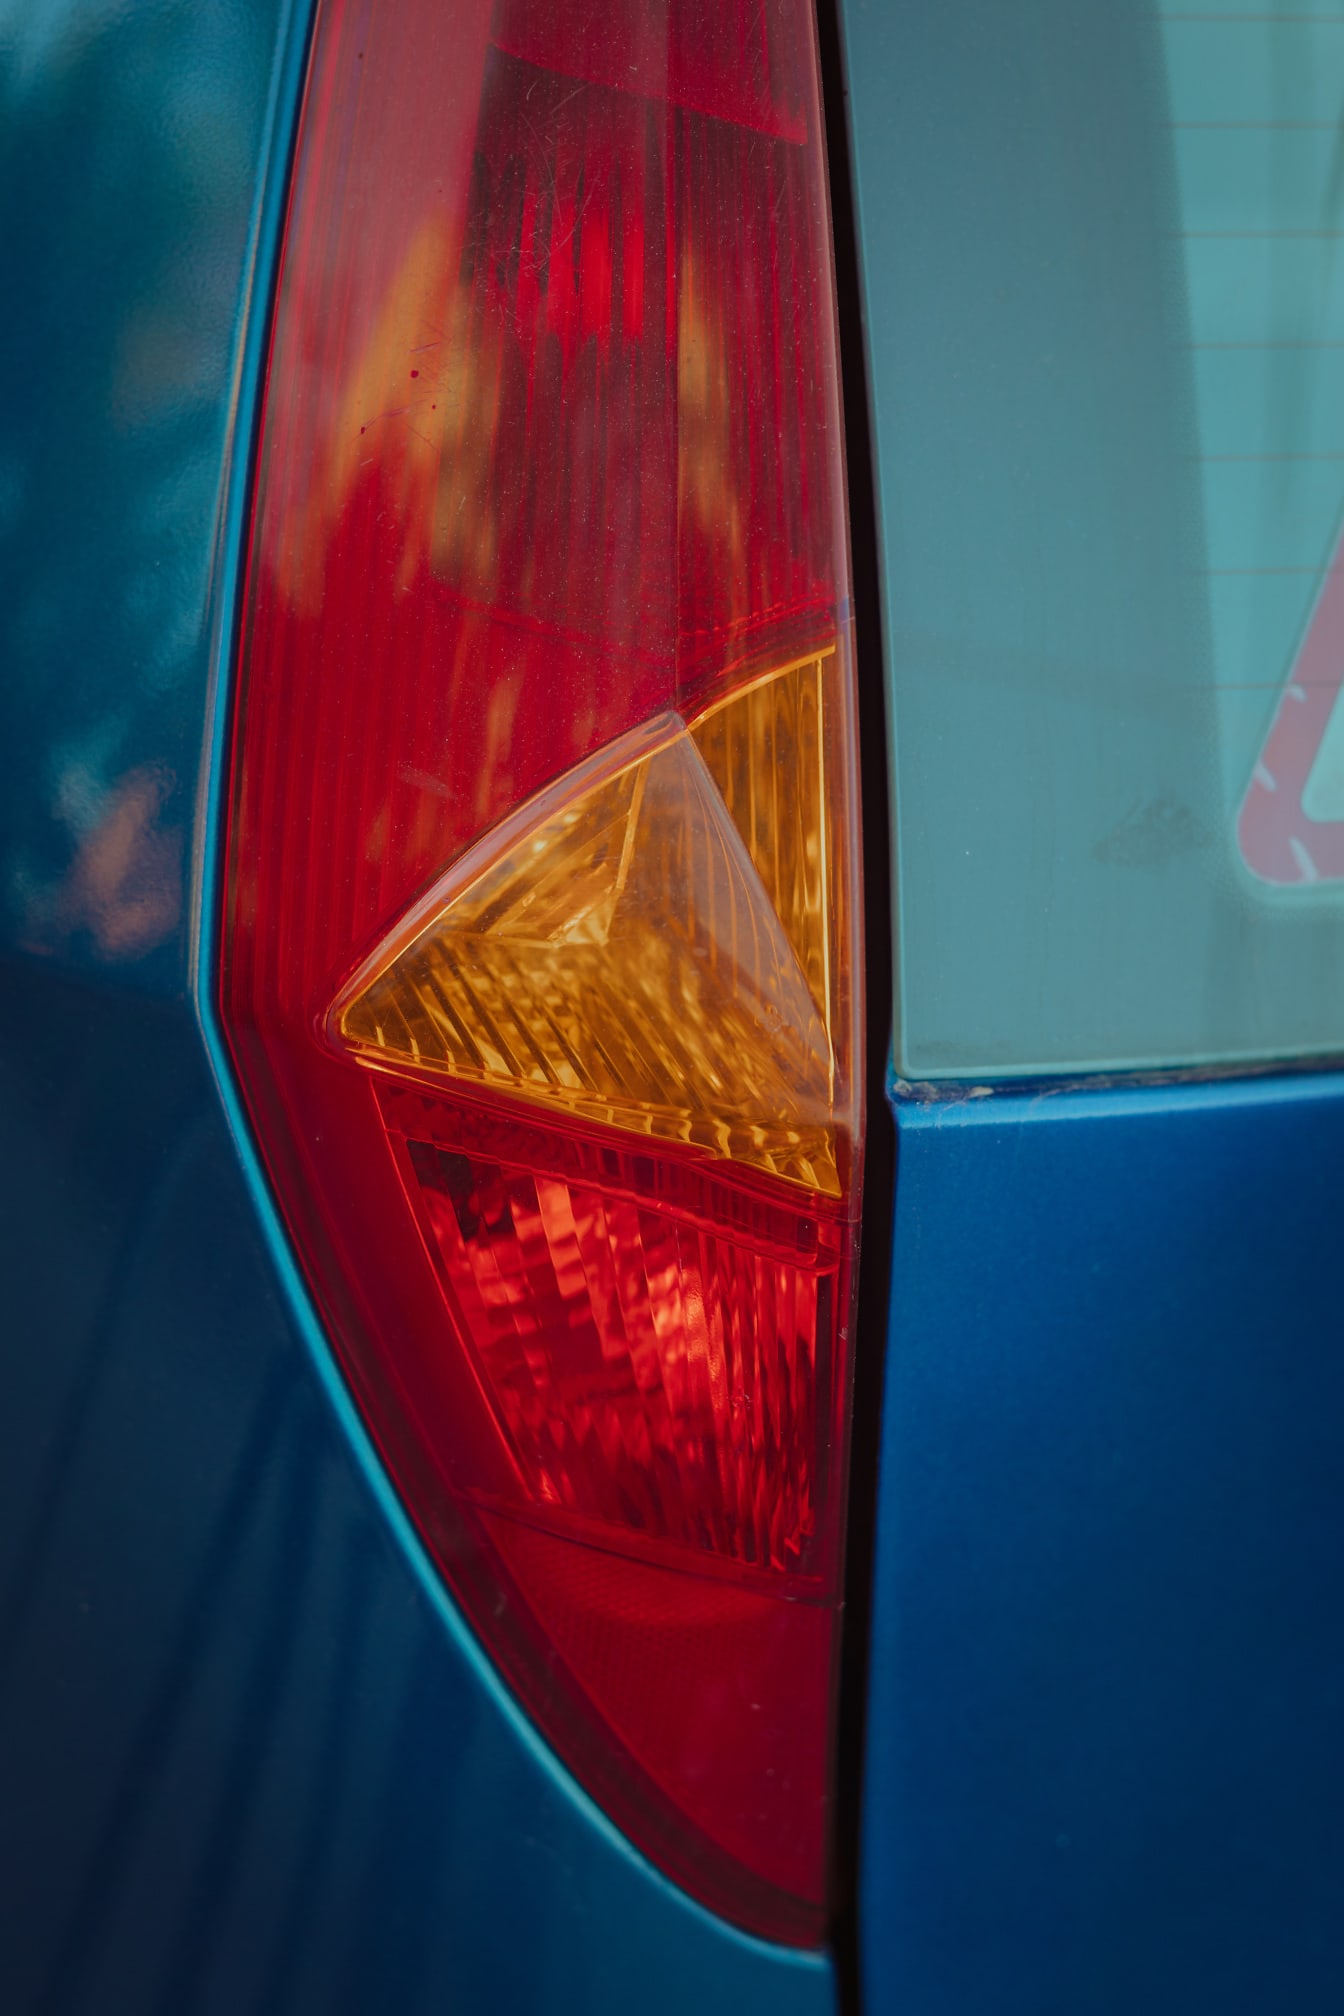 Primer plano del detalle de plástico rojo oscuro y amarillo anaranjado del automóvil